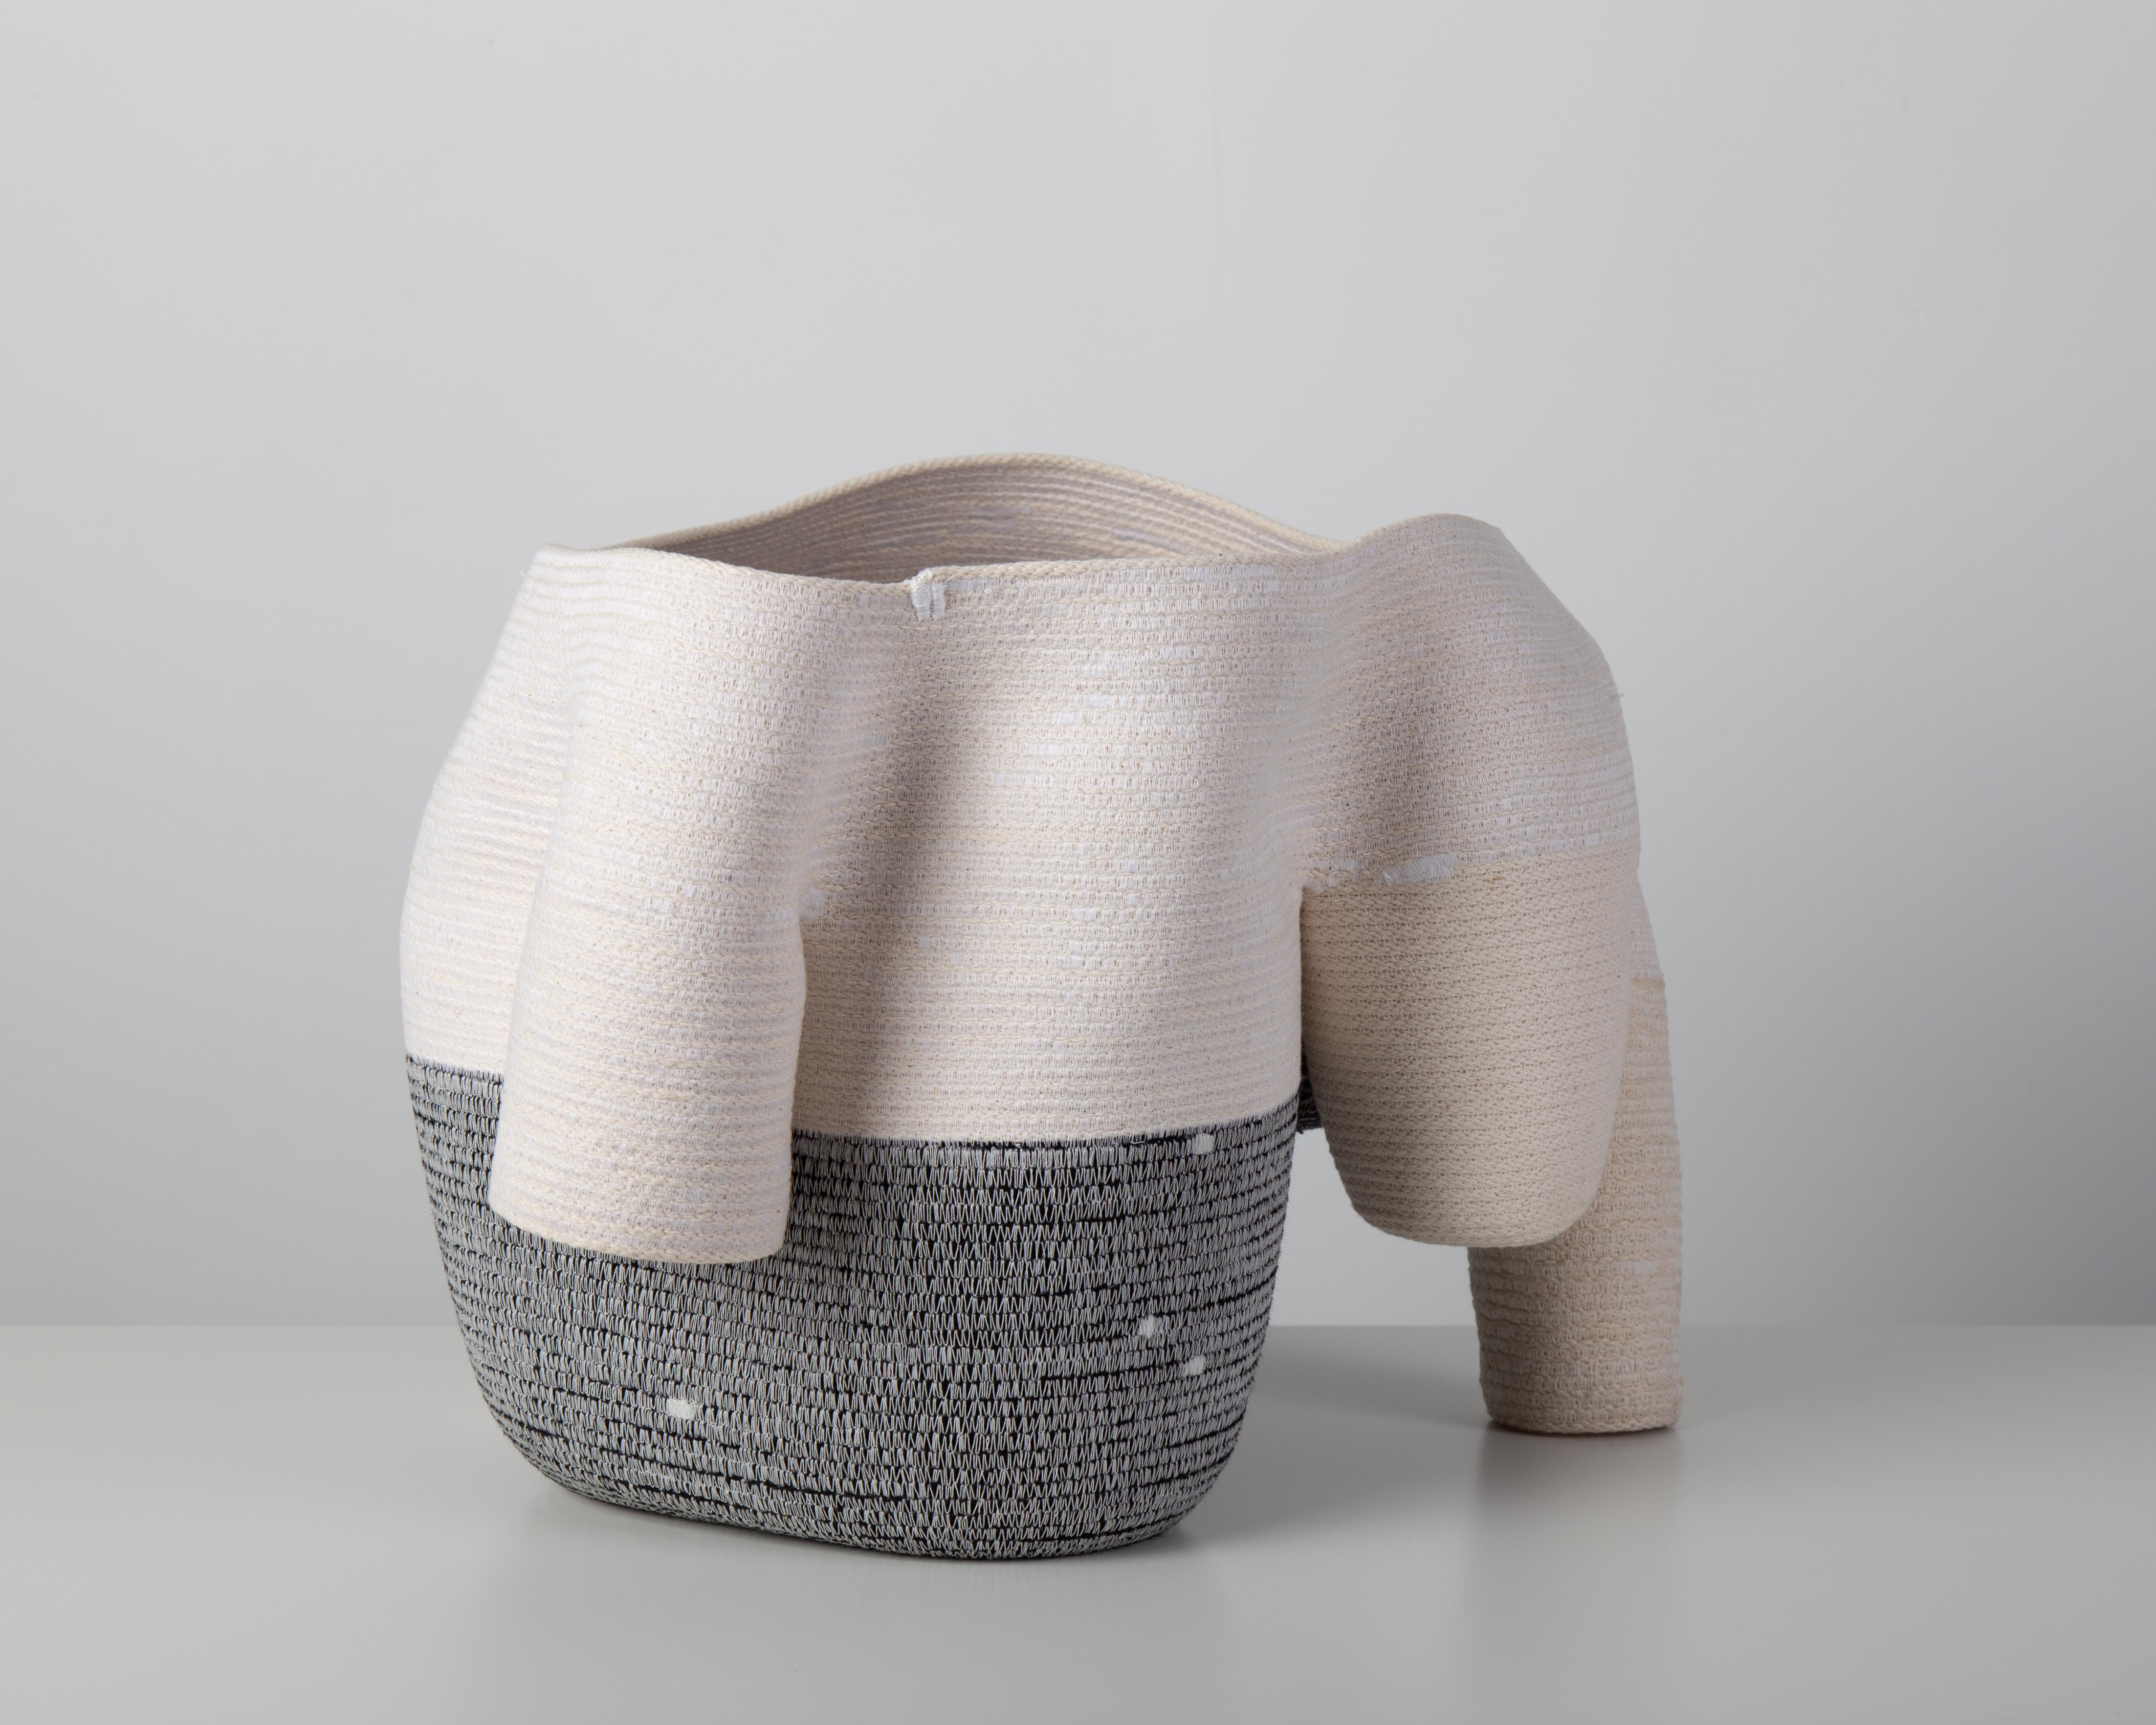 « Vase sans titre de 15 cm » Sculpture en fibre de coton enroulée et cousue de Doug Johnston 1